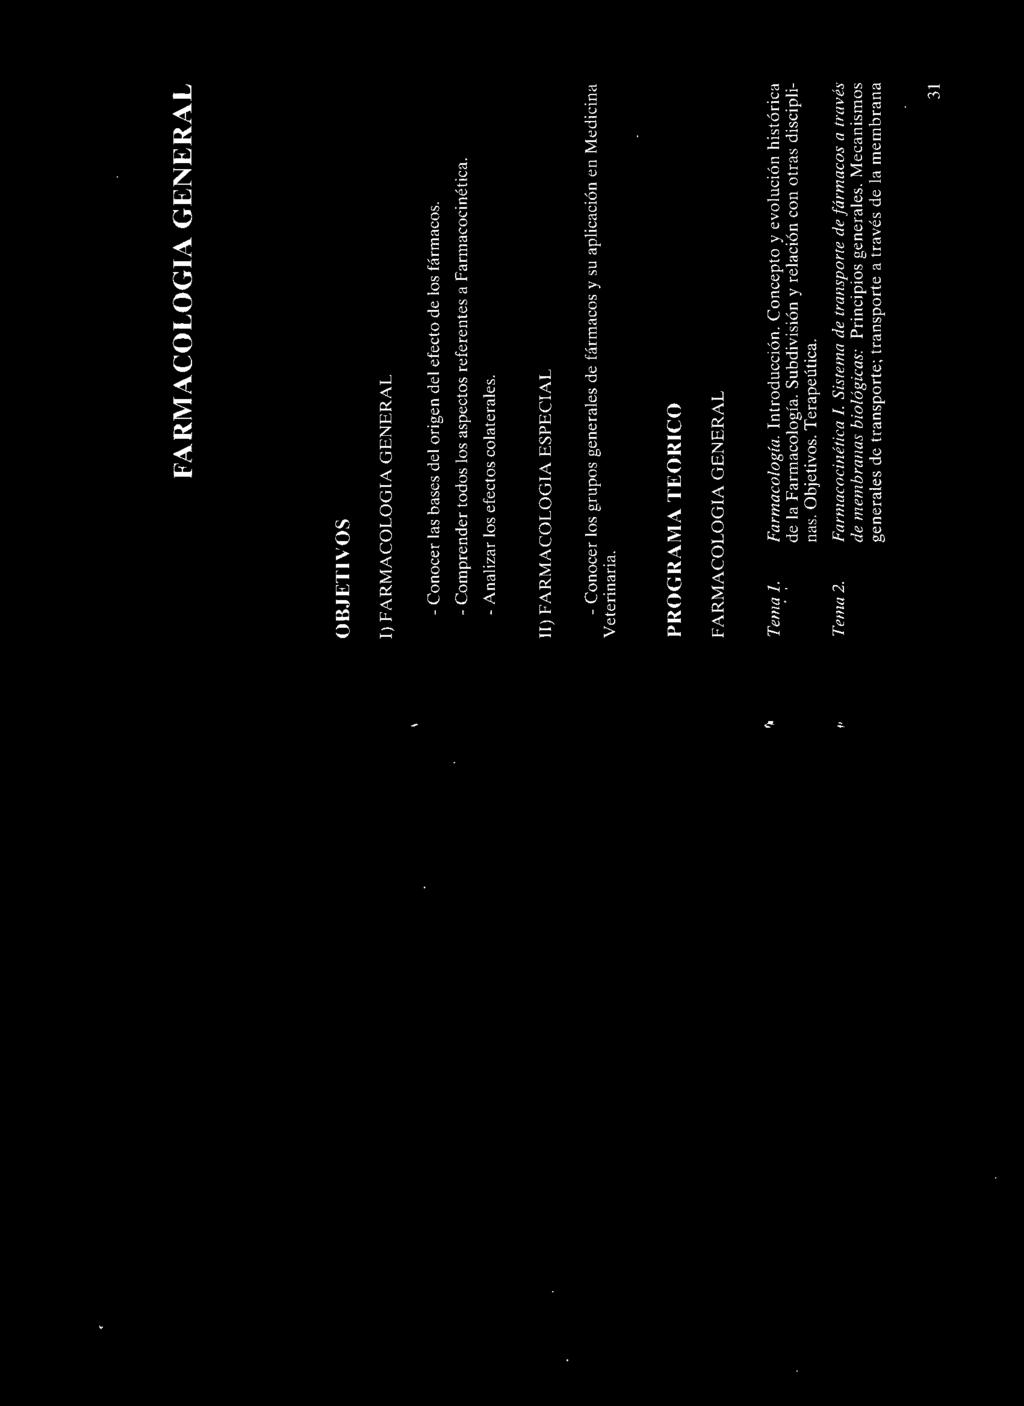 PROGRAMA TEORICO FARMACOLOGIA GENERAL Tema l. Tema2. Farmacología. Introducción. Concepto y evolución histórica de la Farmacología. Subdivisión y relación con otras disciplinas.